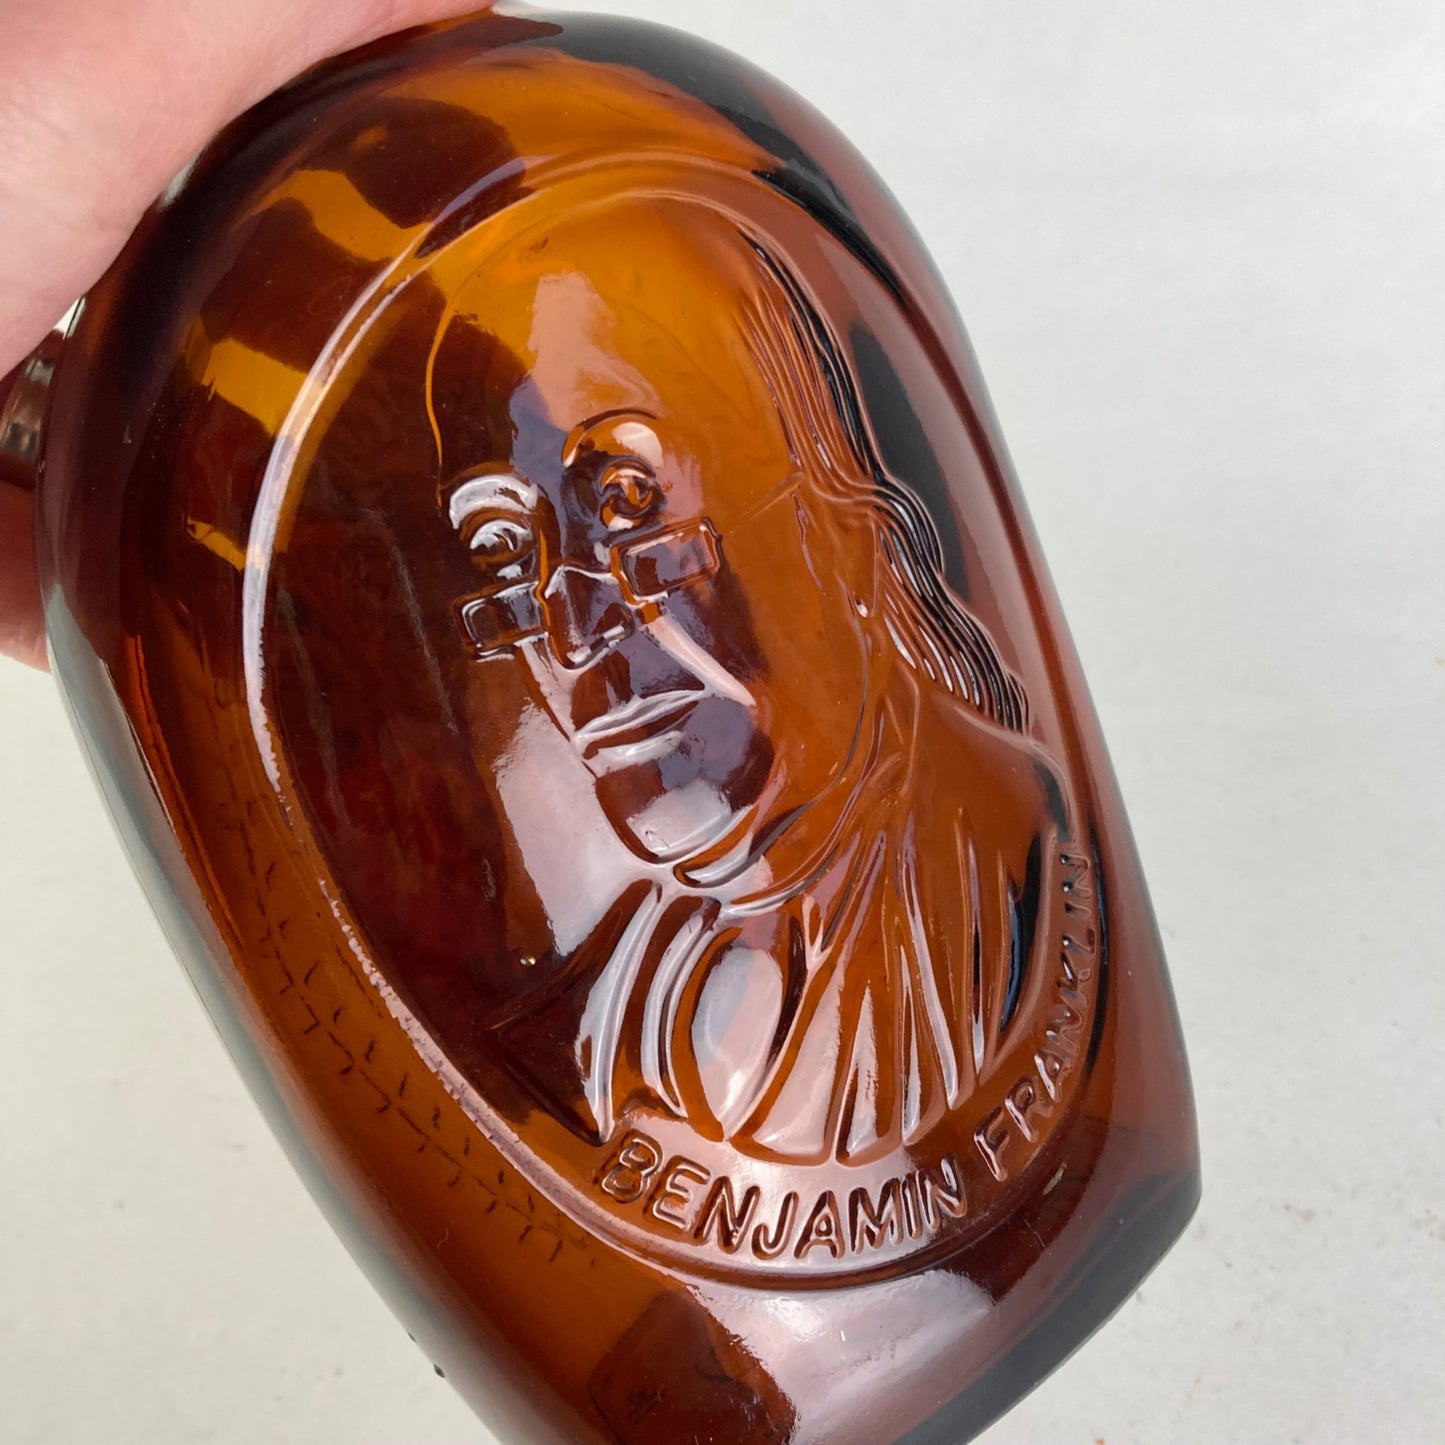 Vintage Log Cabin Glass Syrup Bottle Benjamin Franklin Special Collector's Flask